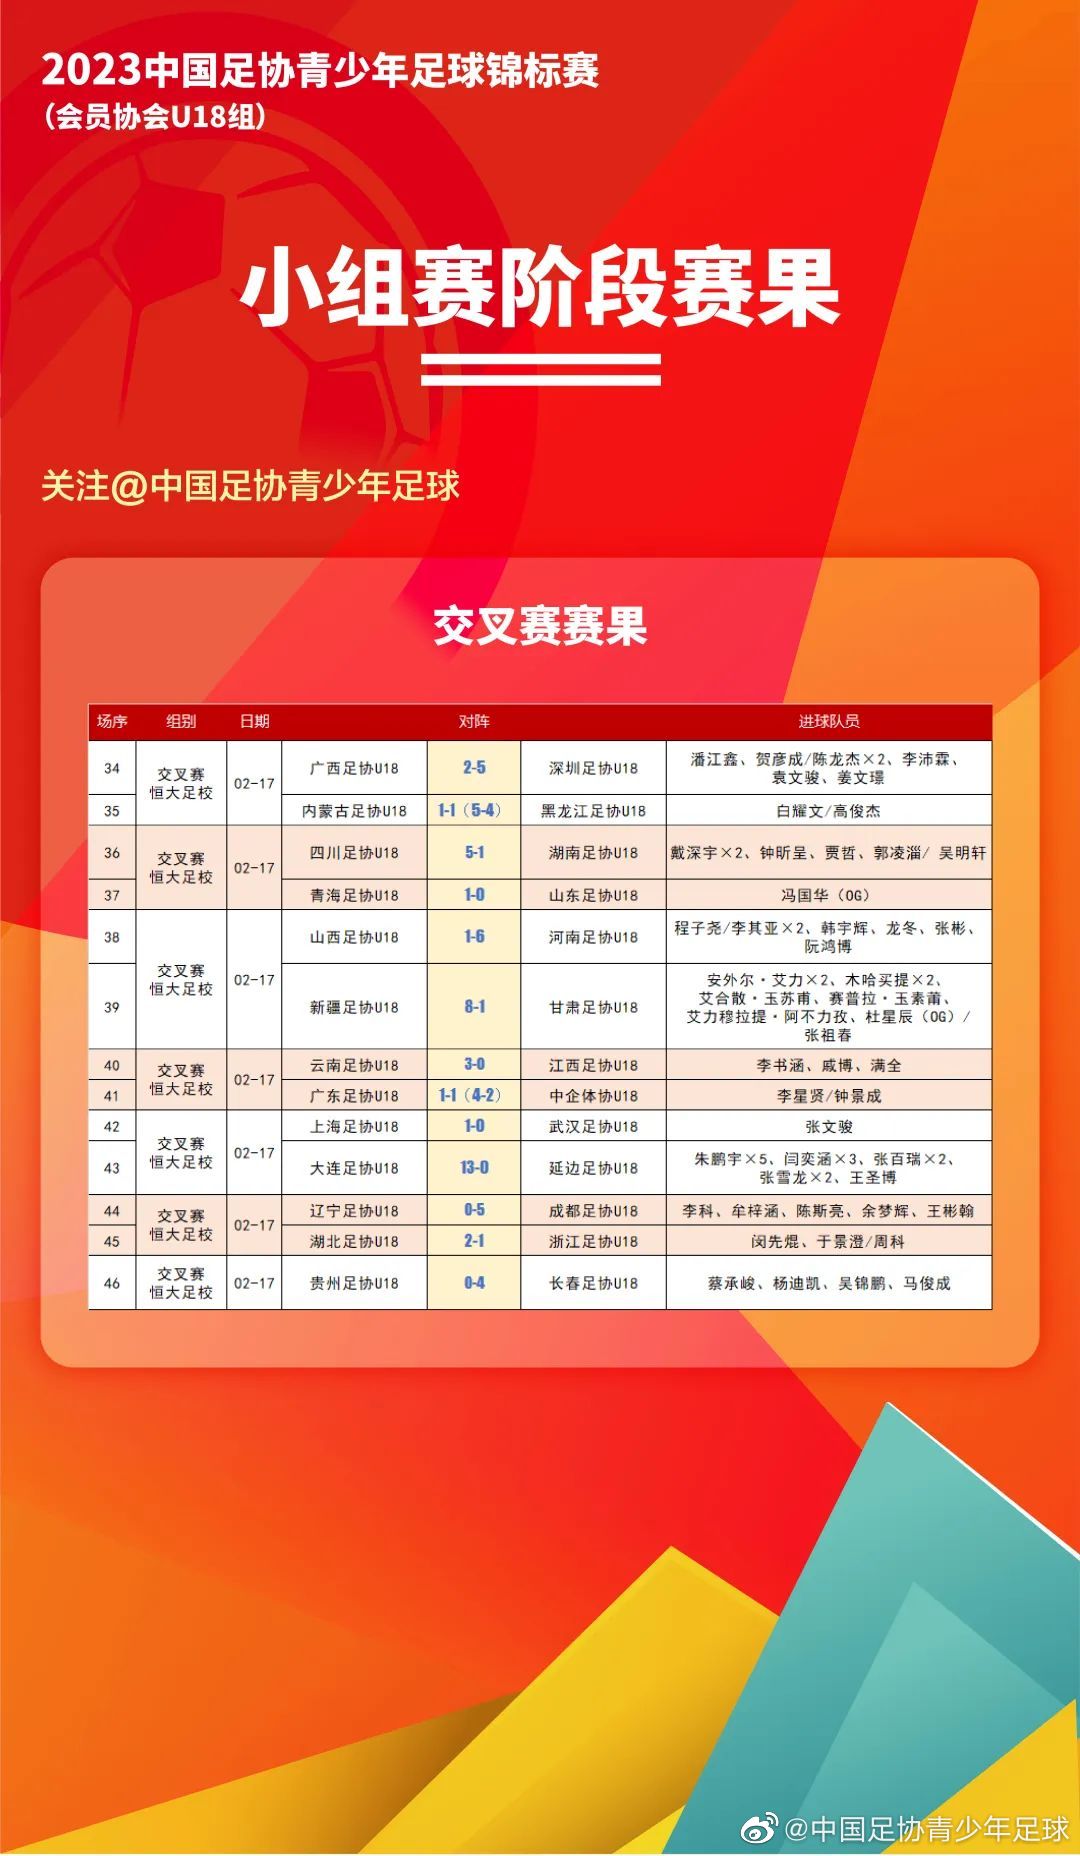 2023年中国足协青少年足球锦标赛交叉赛比赛进行了13场精彩对决